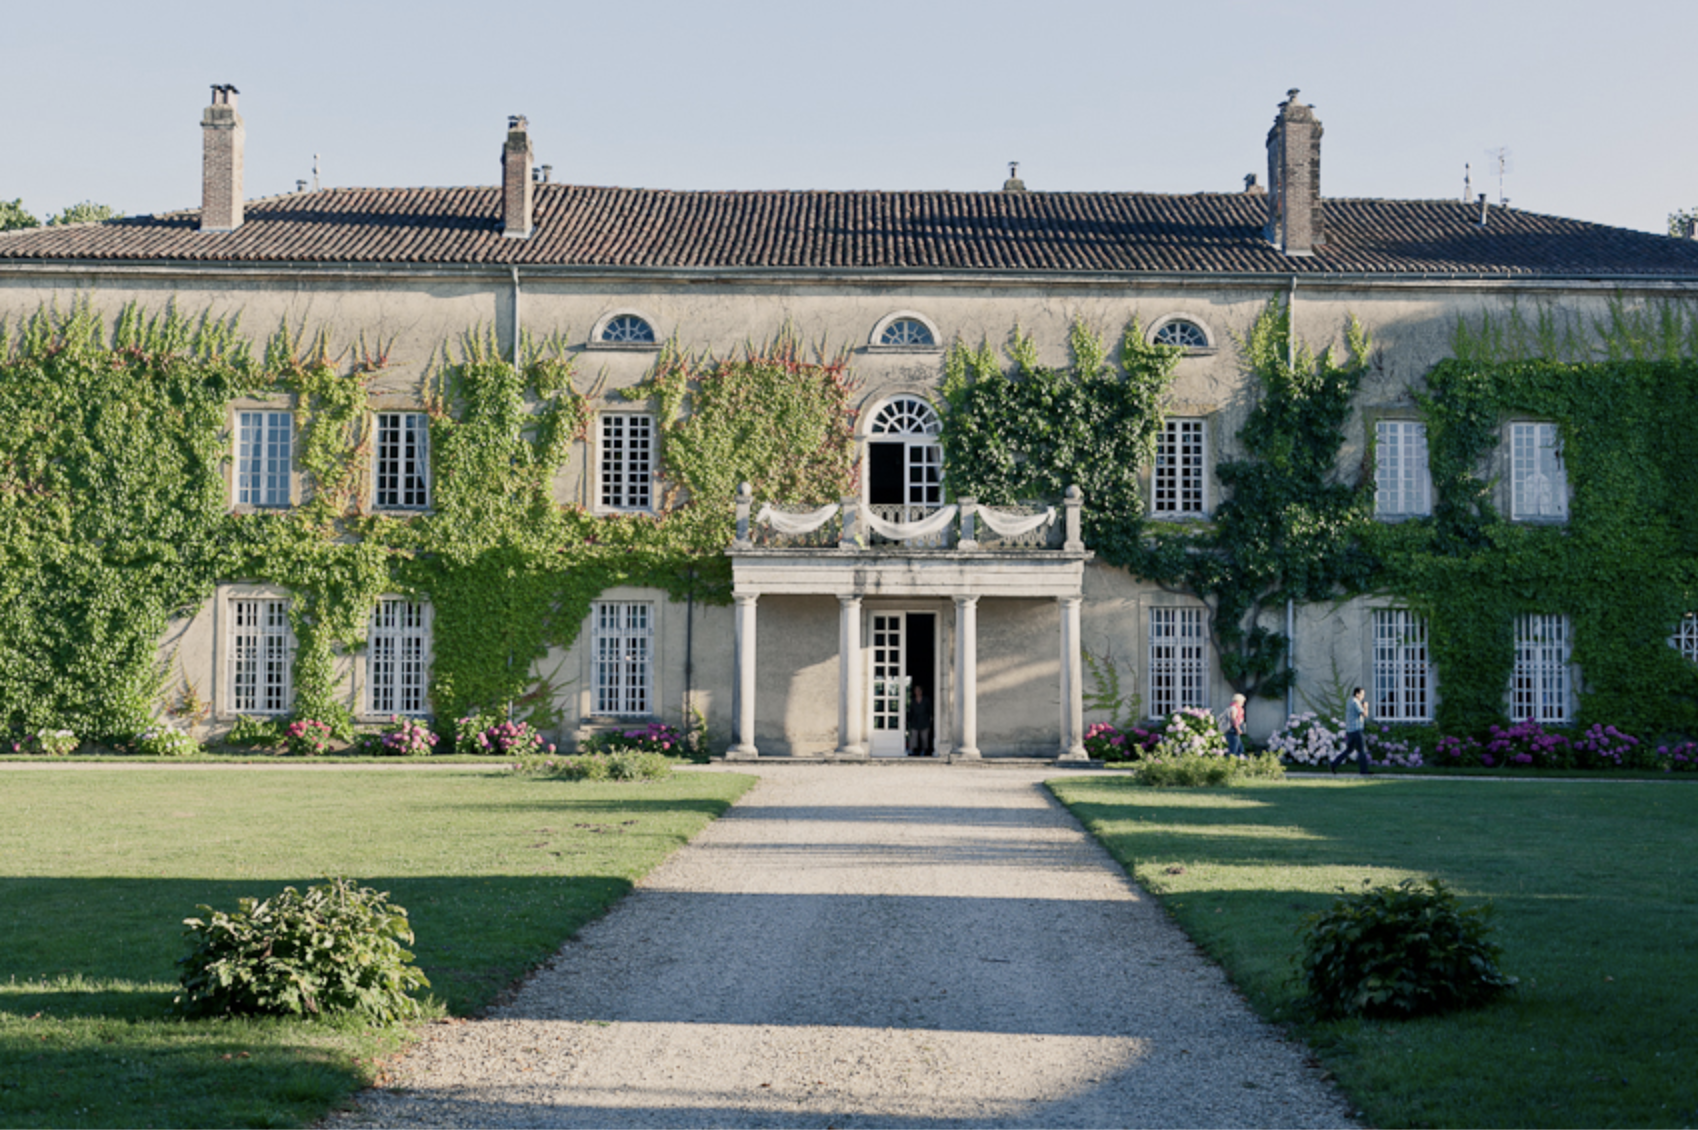 Mariage romantique au Château de Montplaisant - Aude + Gilles - Blog Mariage Madame C